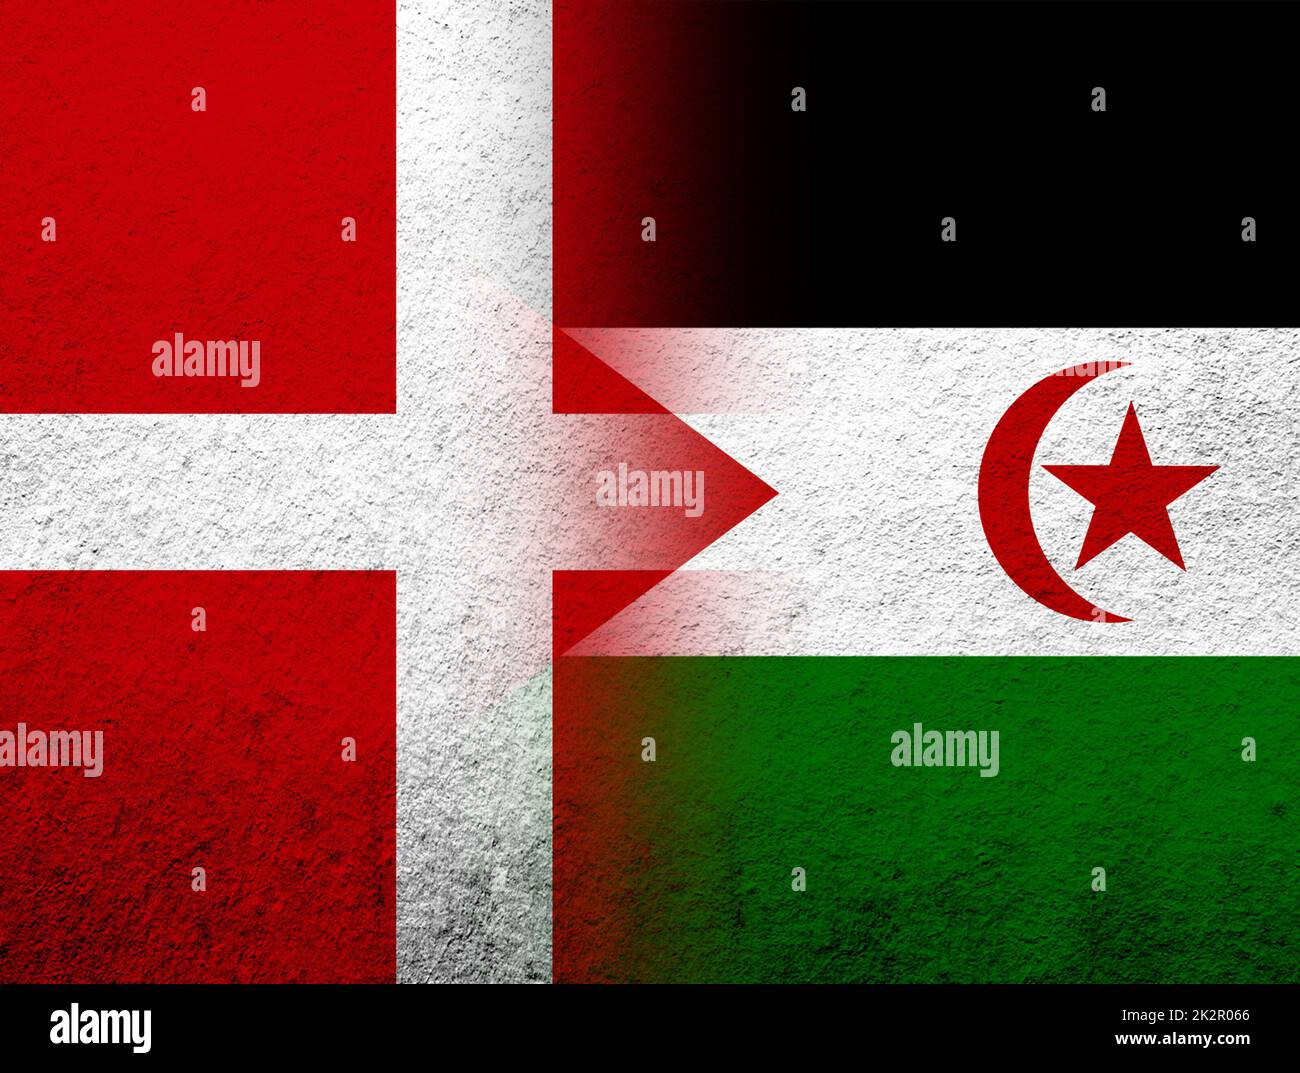 Das Königreich Dänemark Nationalflagge mit der Saharaui-Nationalflagge der Arabischen Demokratischen Republik Westsahara. Grunge Hintergrund Stockfoto